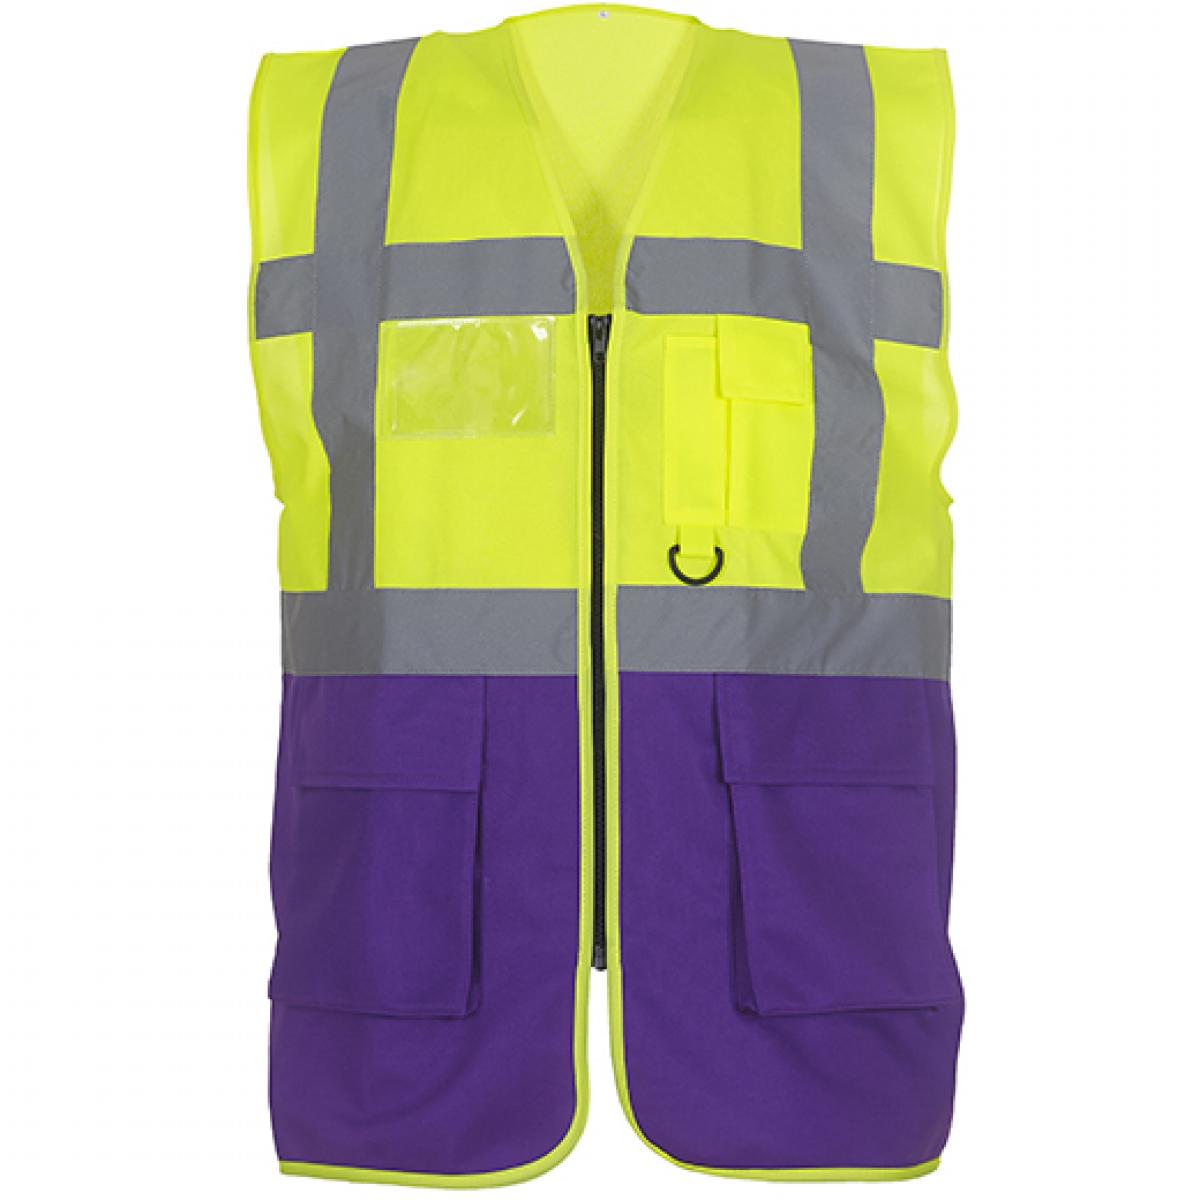 Hersteller: YOKO Herstellernummer: HVW801 Artikelbezeichnung: Herren Multi-Functional Executive Waistcoat Farbe: Hi-Vis Yellow/Purple